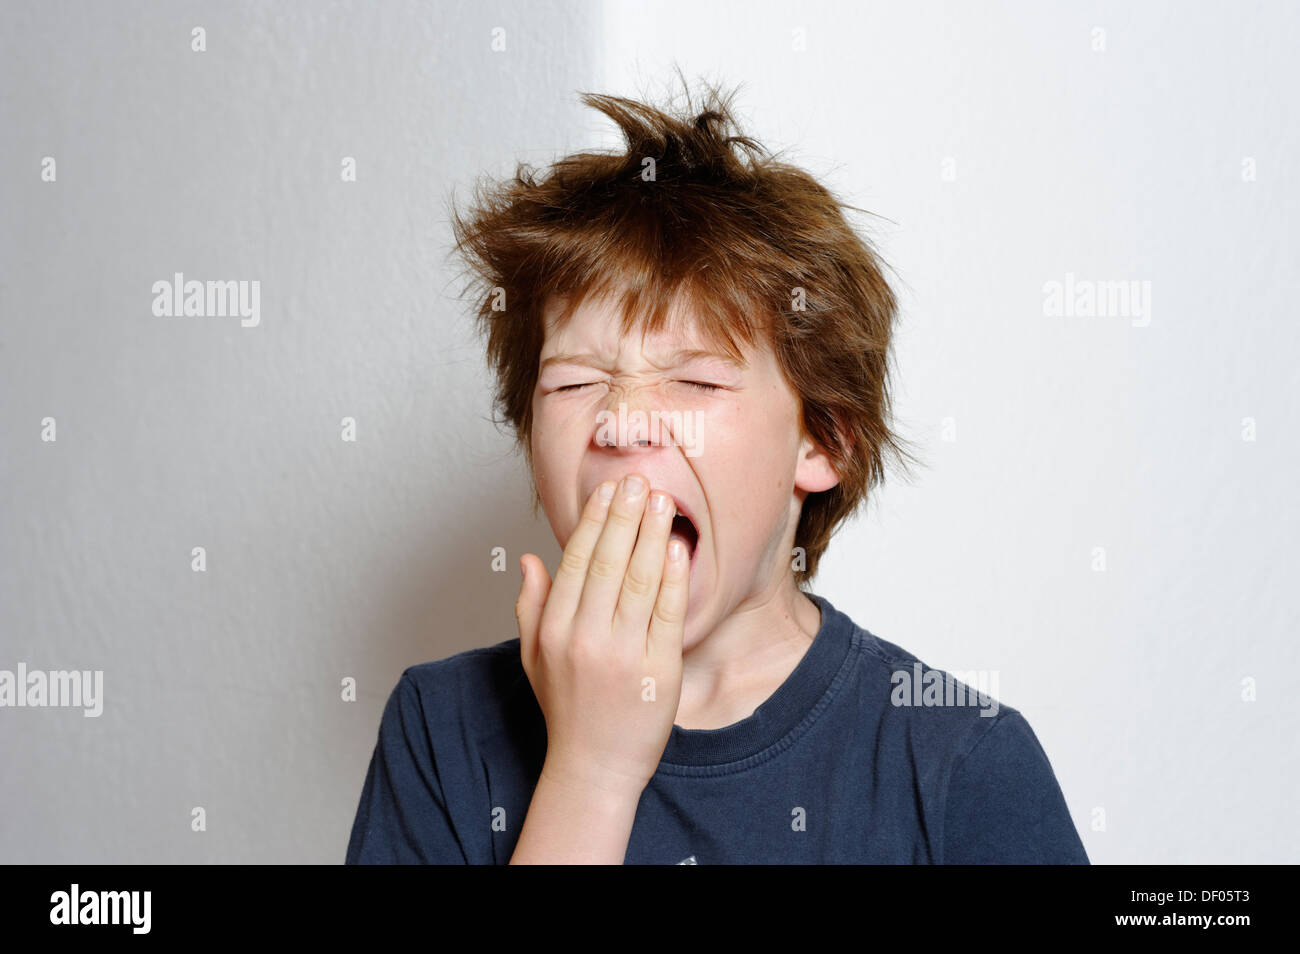 Junge, 12 Jahre, Gähnen, mit zerzausten Haaren Stockfoto